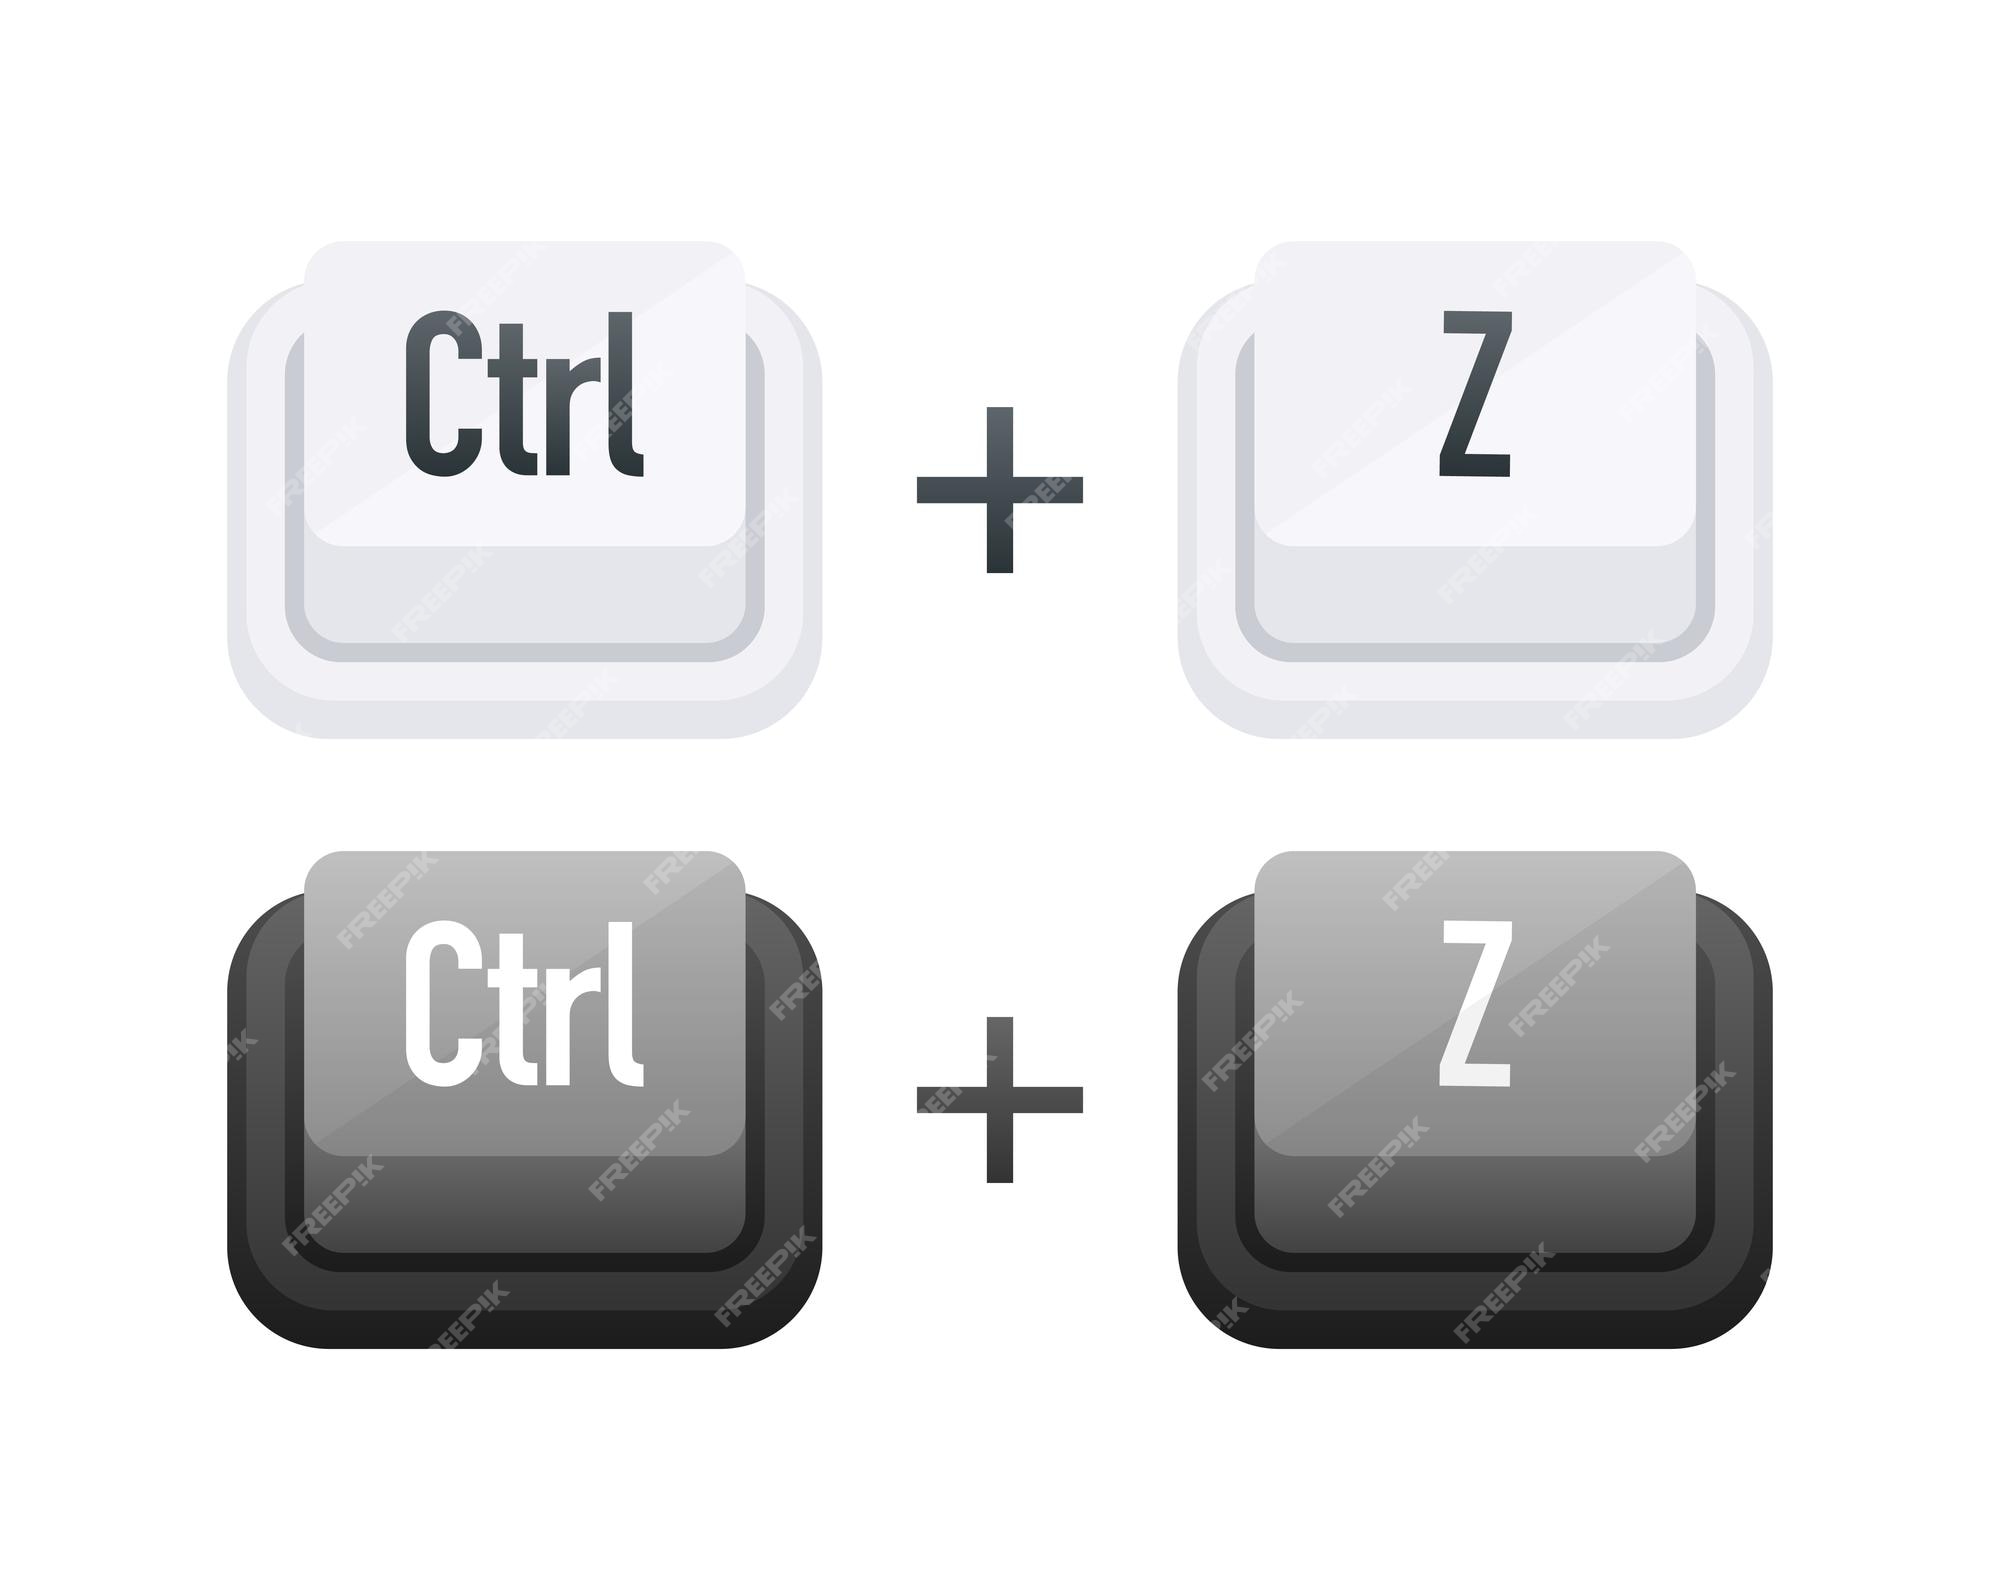 Paso Destilar Indica Ctrl z tecla del teclado teclas de acceso directo teclas de acceso rápido  para deshacer la última acción realizada | Vector Premium